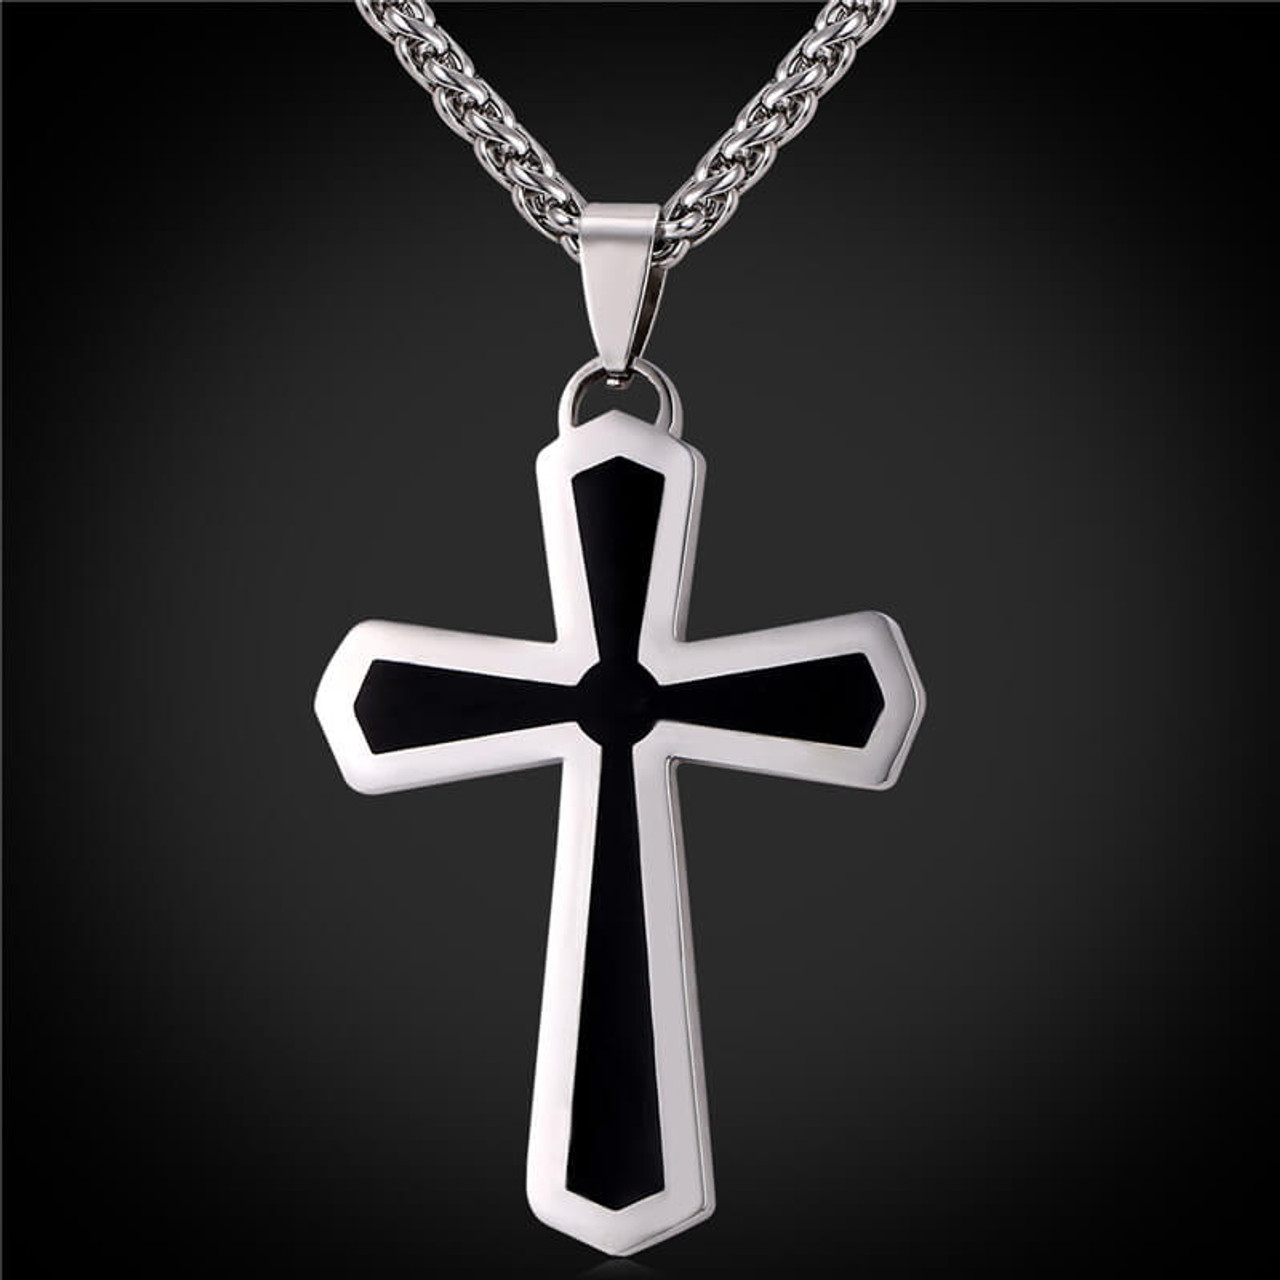 Men's Stainless Steel Cross Pendant - Best Accents Men's Cross Necklace Stainless Steel